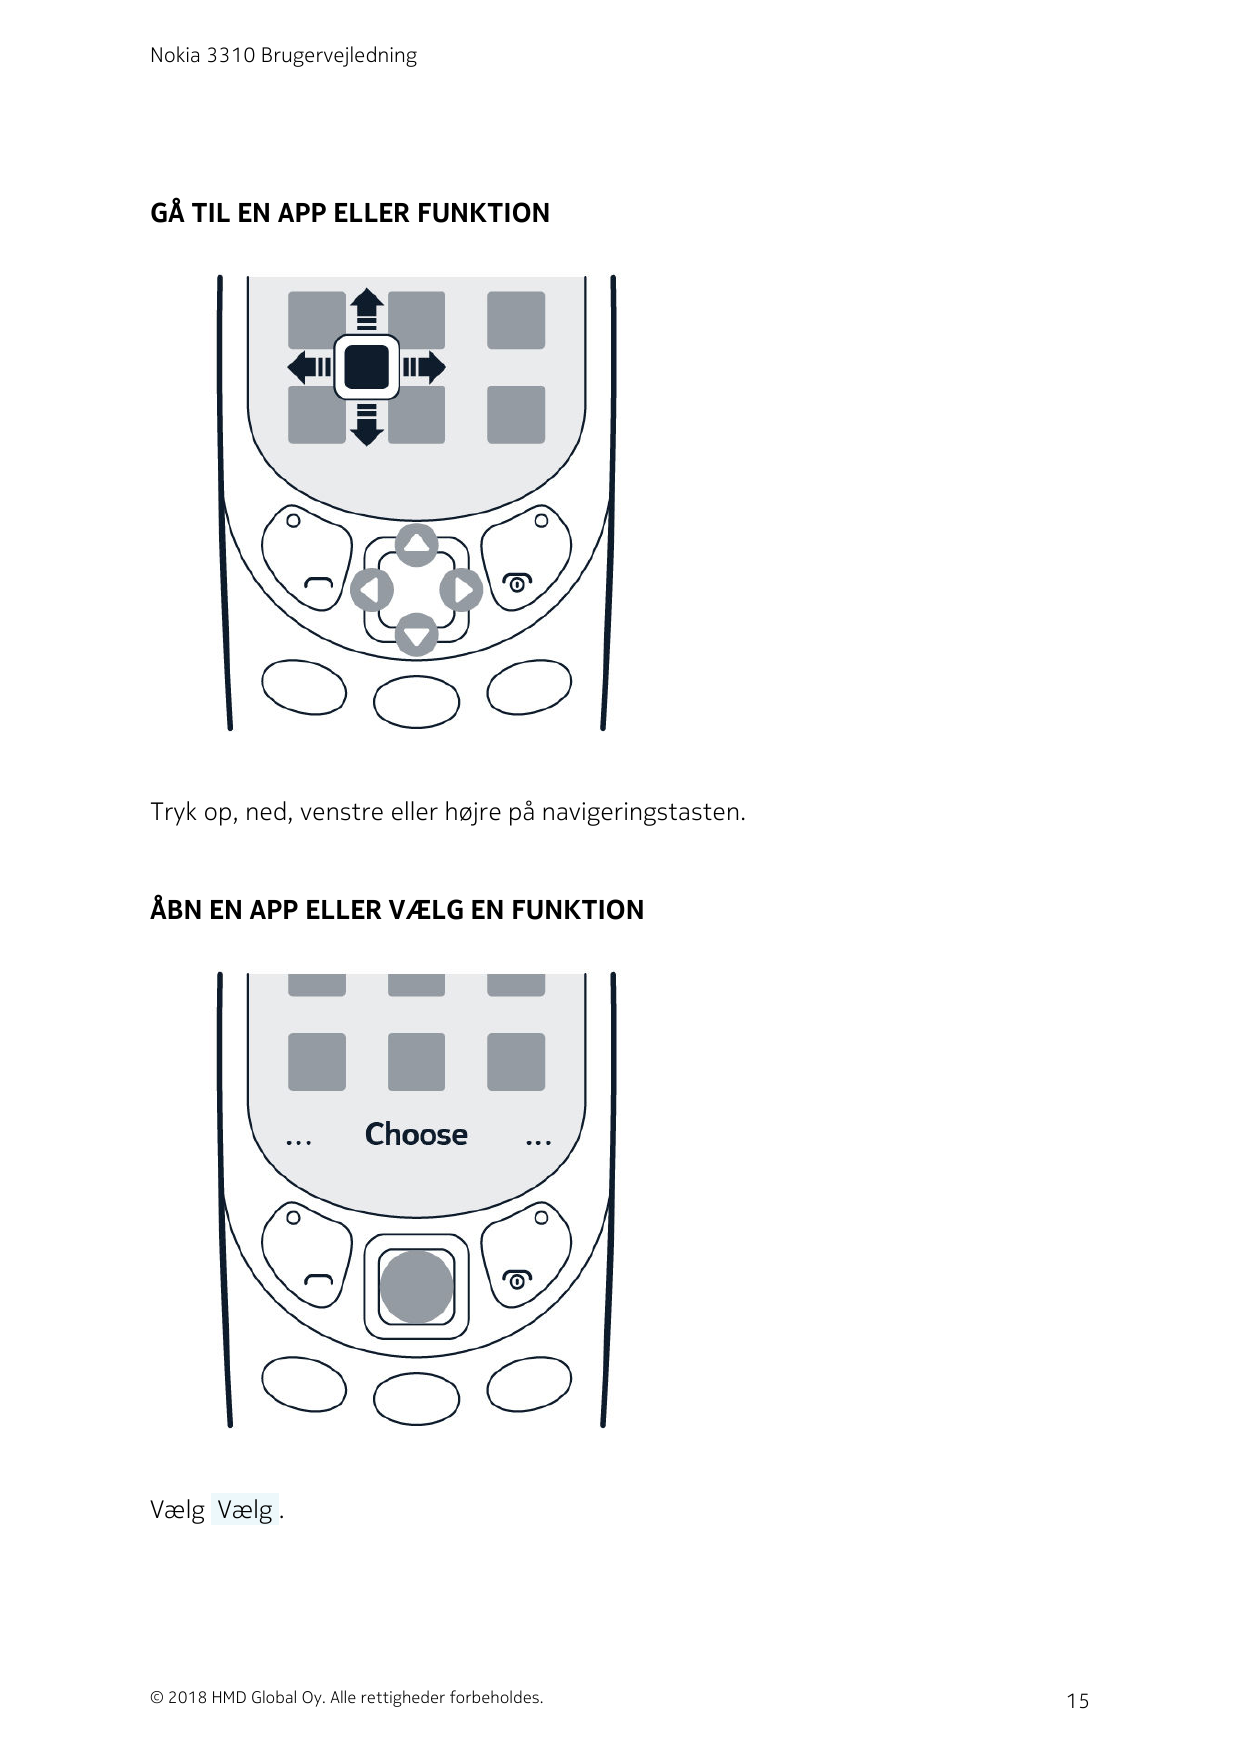 Nokia 3310 BrugervejledningGÅ TIL EN APP ELLER FUNKTIONTryk op, ned, venstre eller højre på navigeringstasten.ÅBN EN APP ELLER V